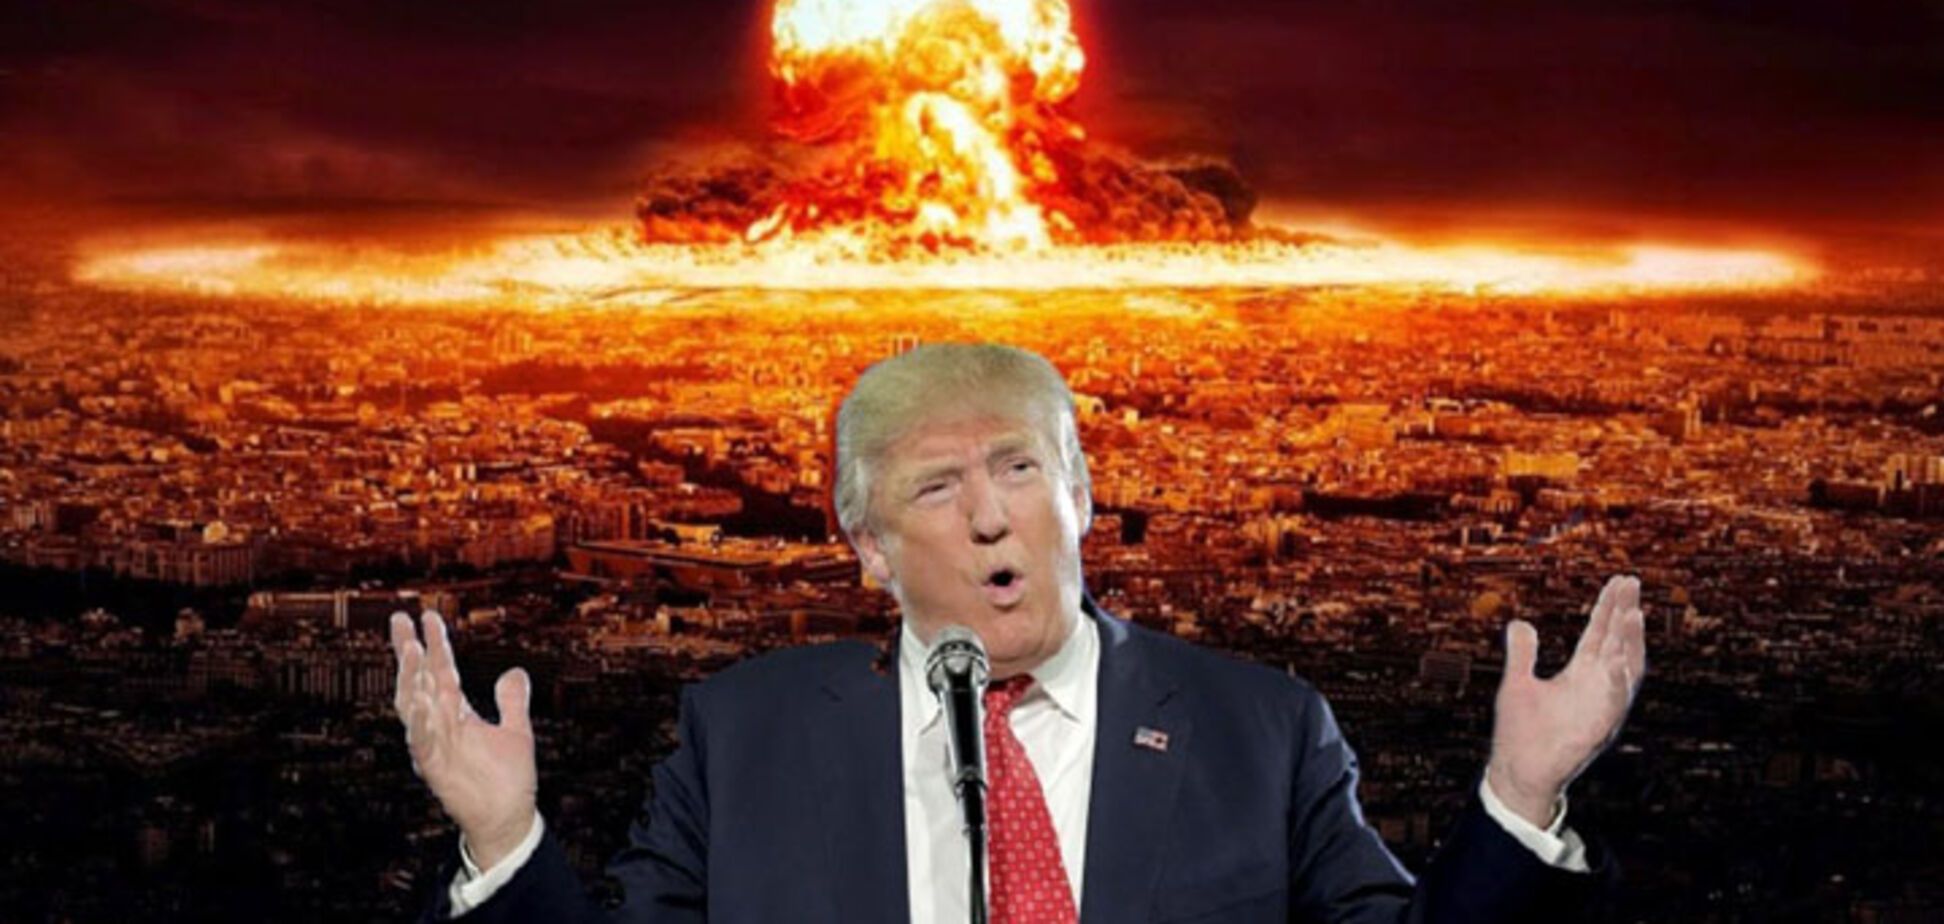 Трамп начнет войну: озвучен прогноз для президента США на 2018 год